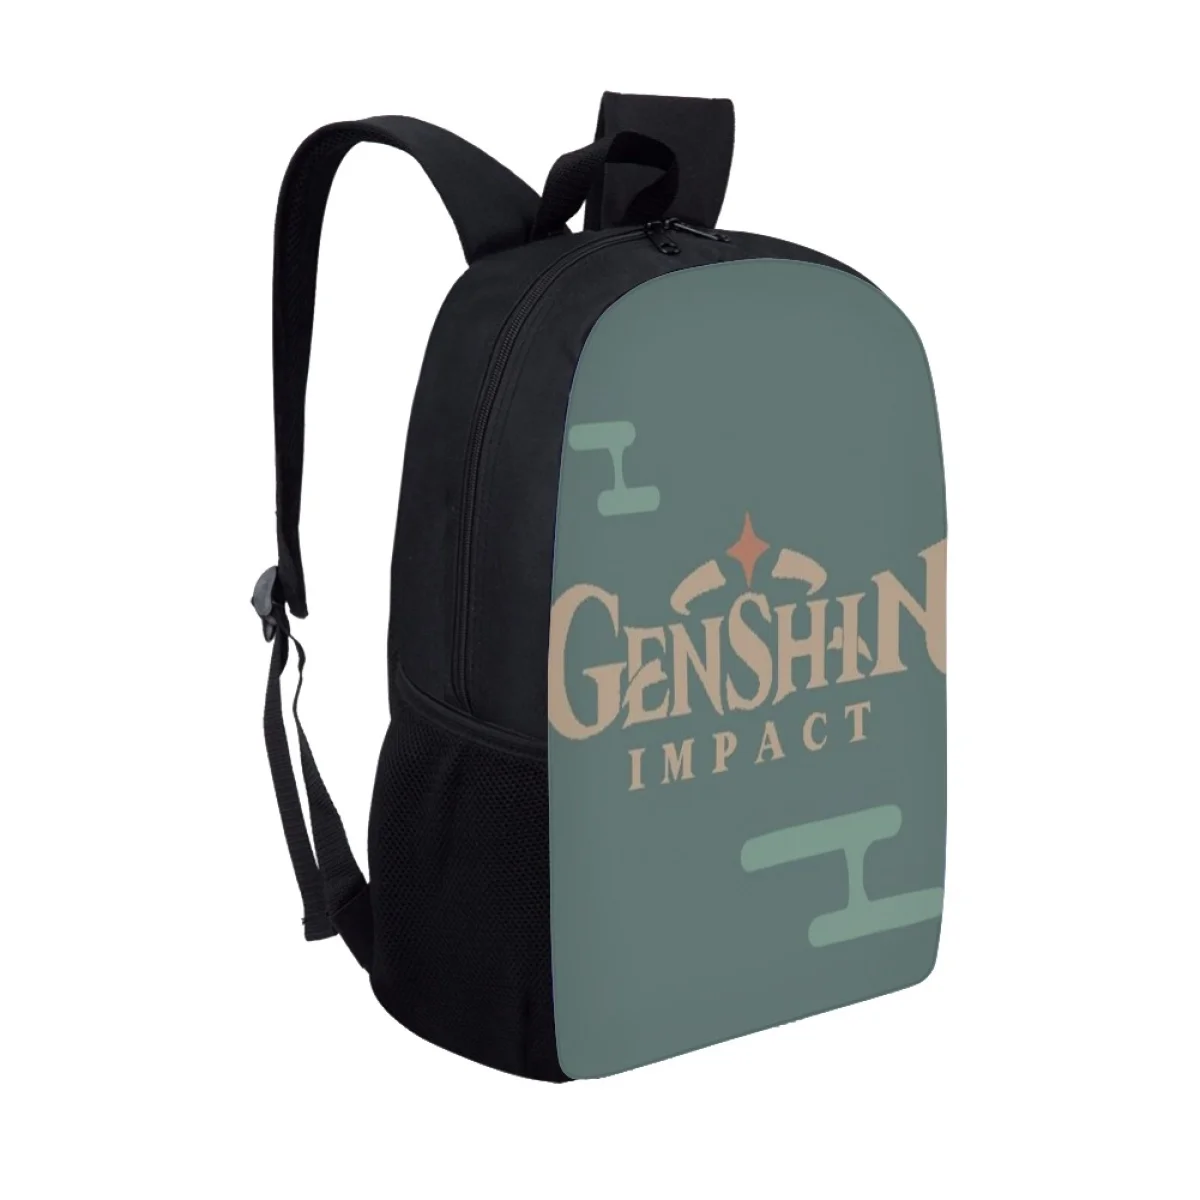 Genshin Shock Детская школьная сумка Рюкзаки для девочек-подростков начальной школы Легкая детская сумка для книг большой емкости Mochila Escolar